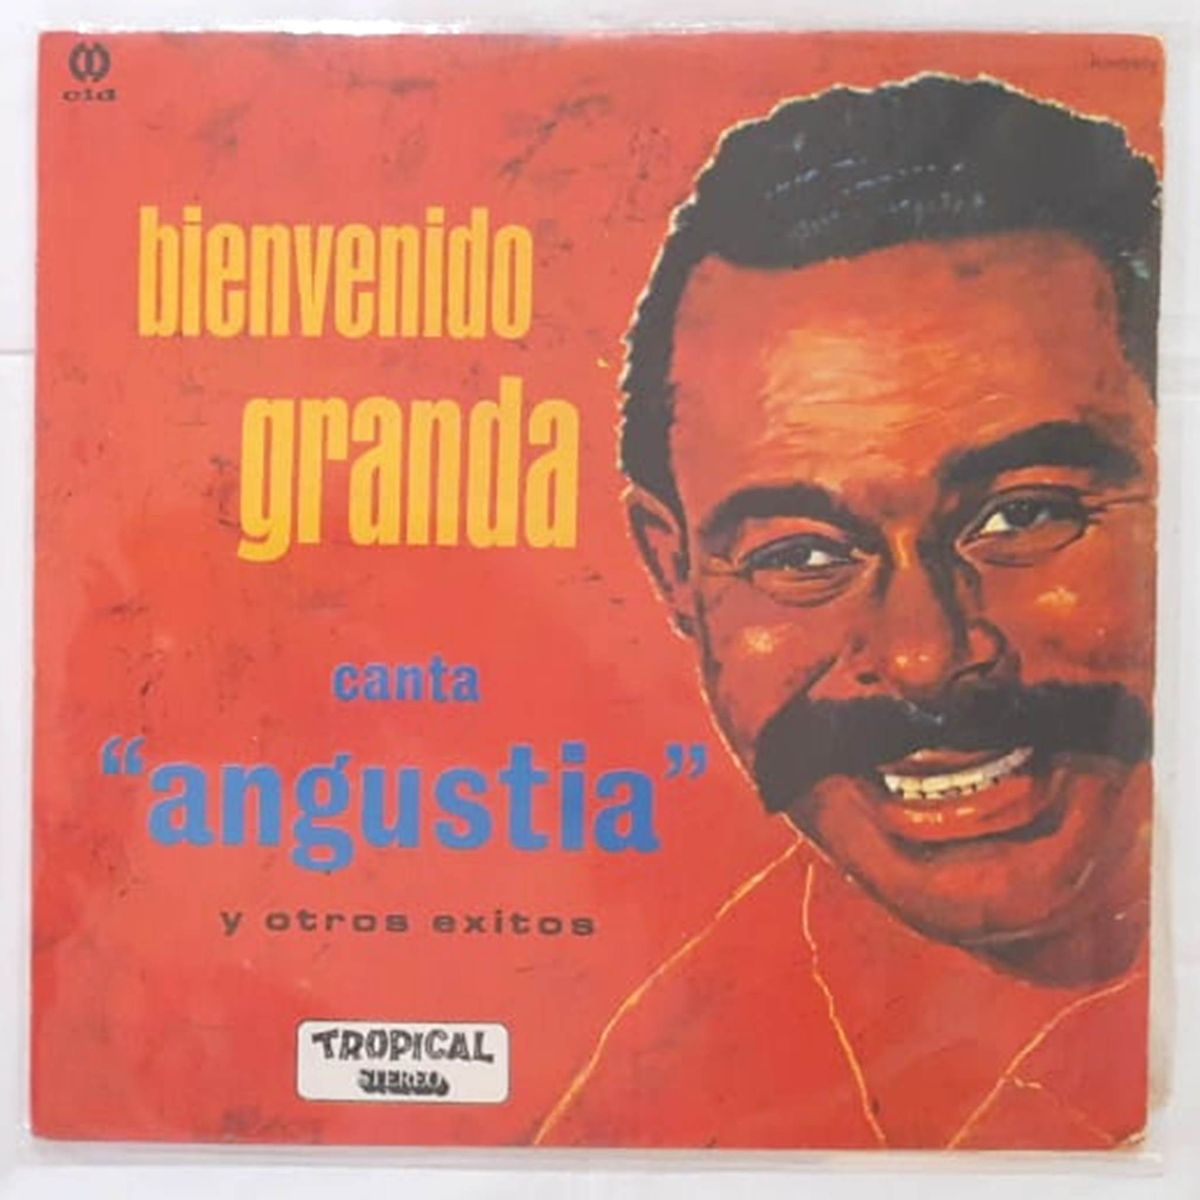 Lp Bienvenido Granda - Canta Angustia - Colecionável, Item de Música Cid  Usado 45772957